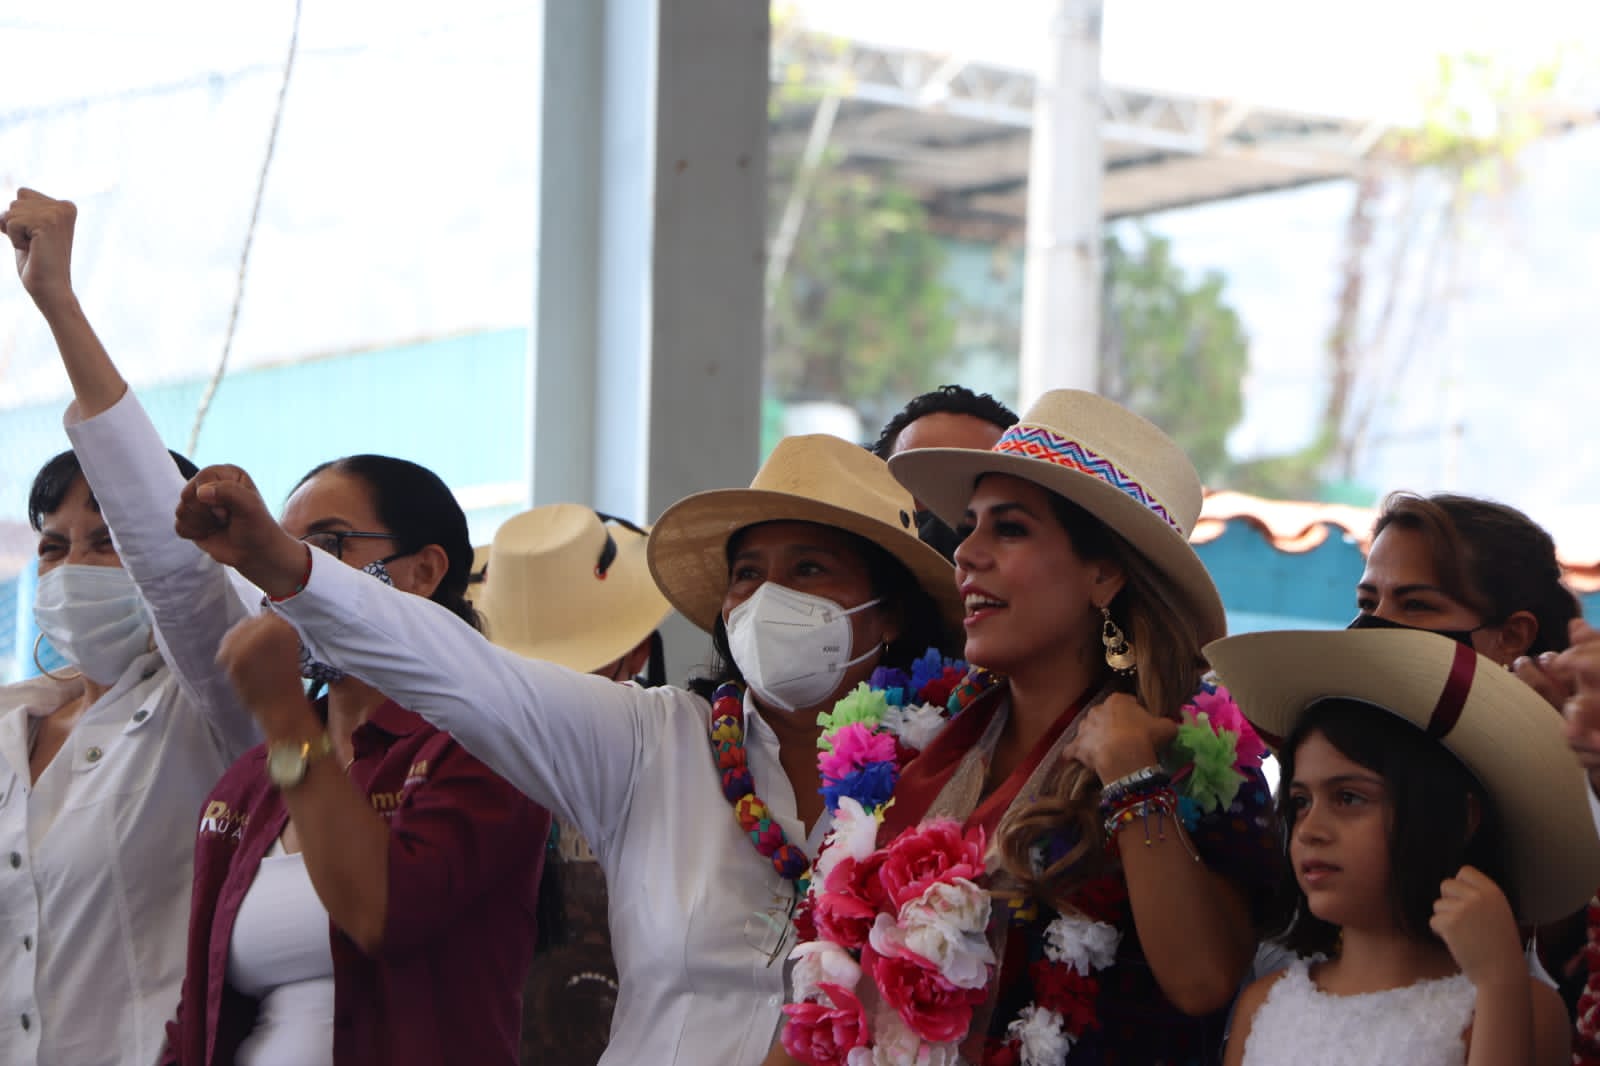 Hay soluciones tras analizar problemas de Acapulco en conjunto: Evelyn Salgado y Abelina López